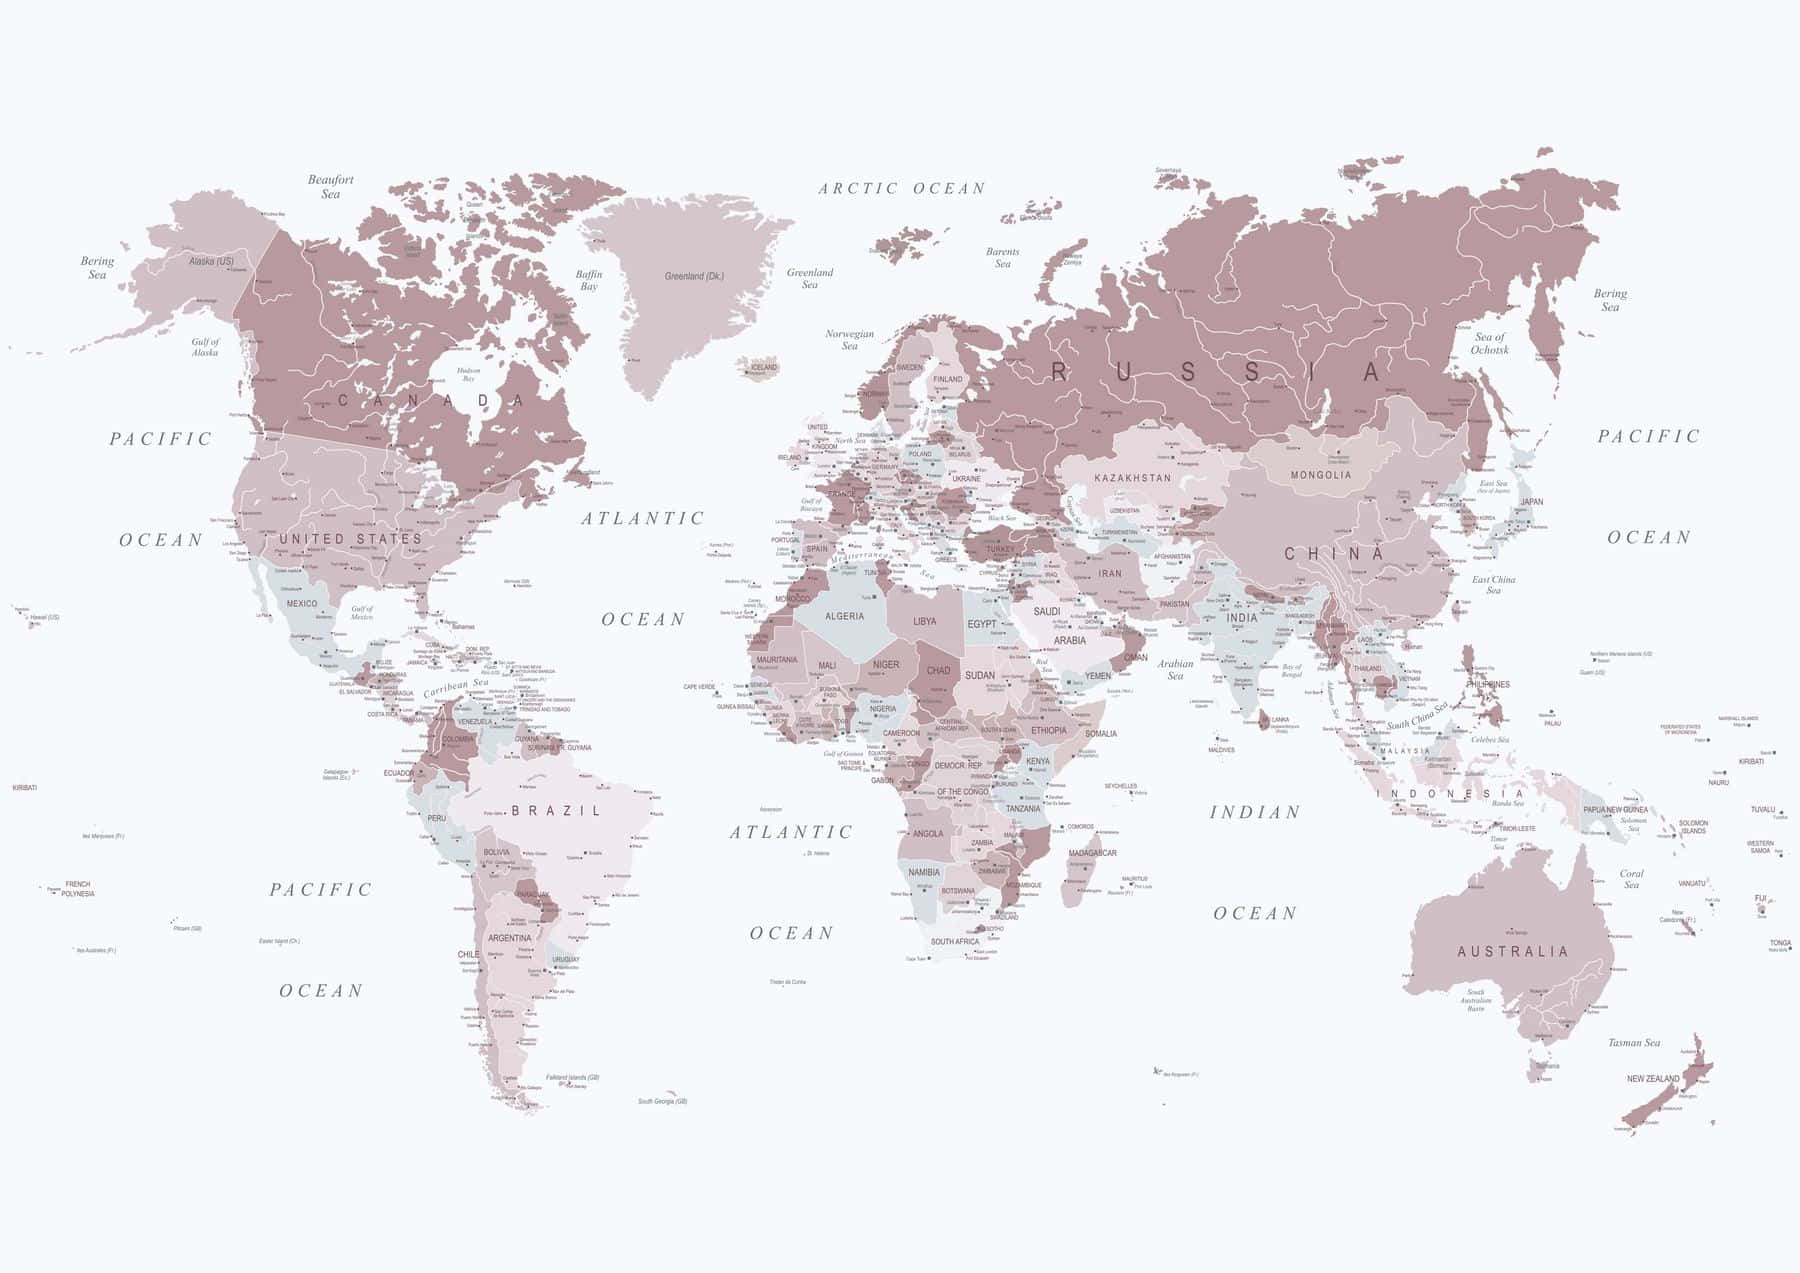 Umailustração Deslumbrante De Um Mapa Mundial. Papel de Parede